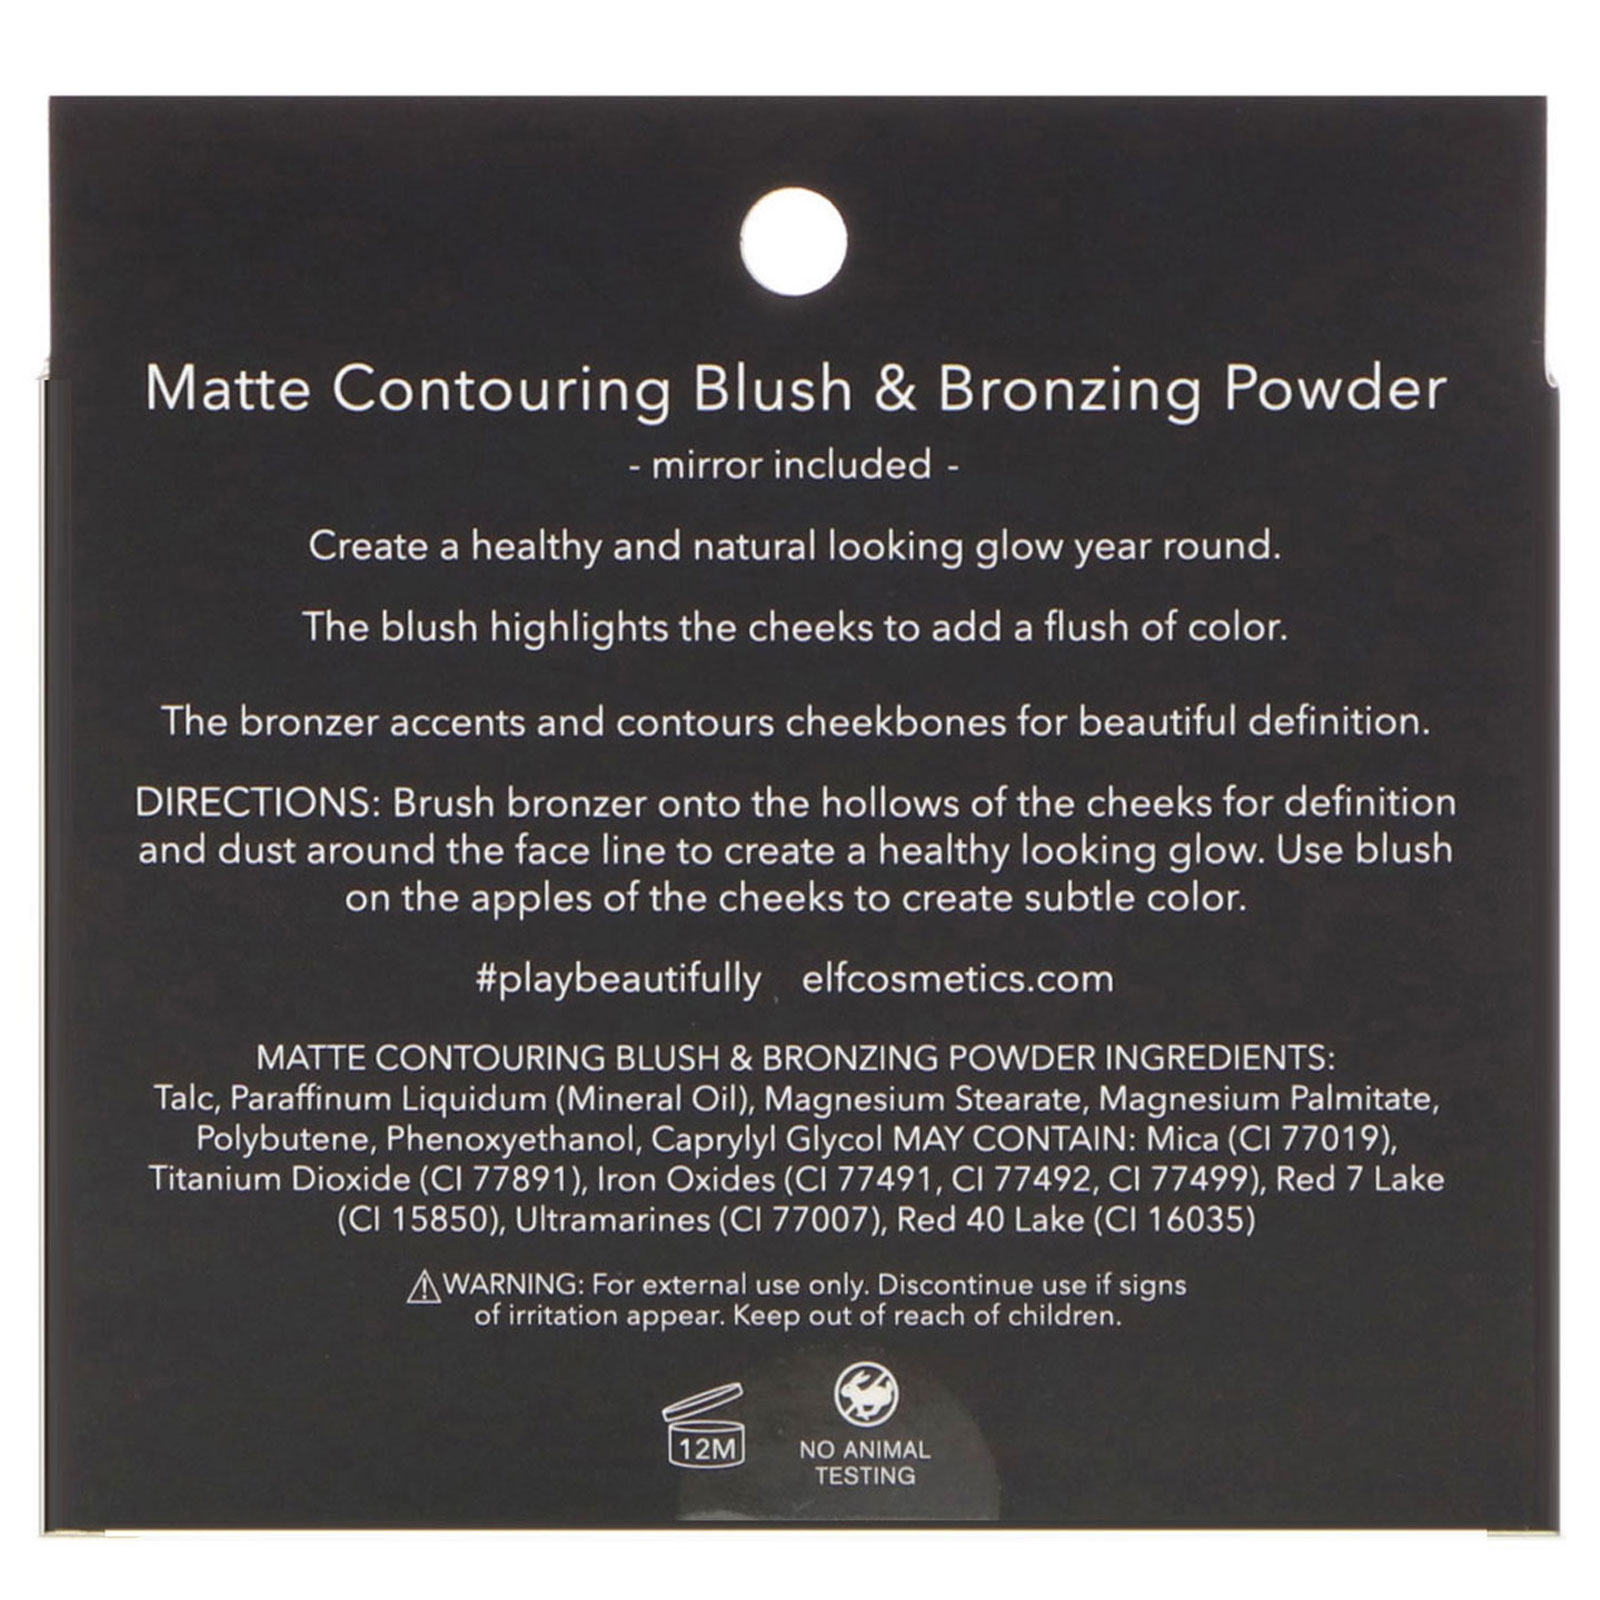 matte contouring blush & bronzing powder